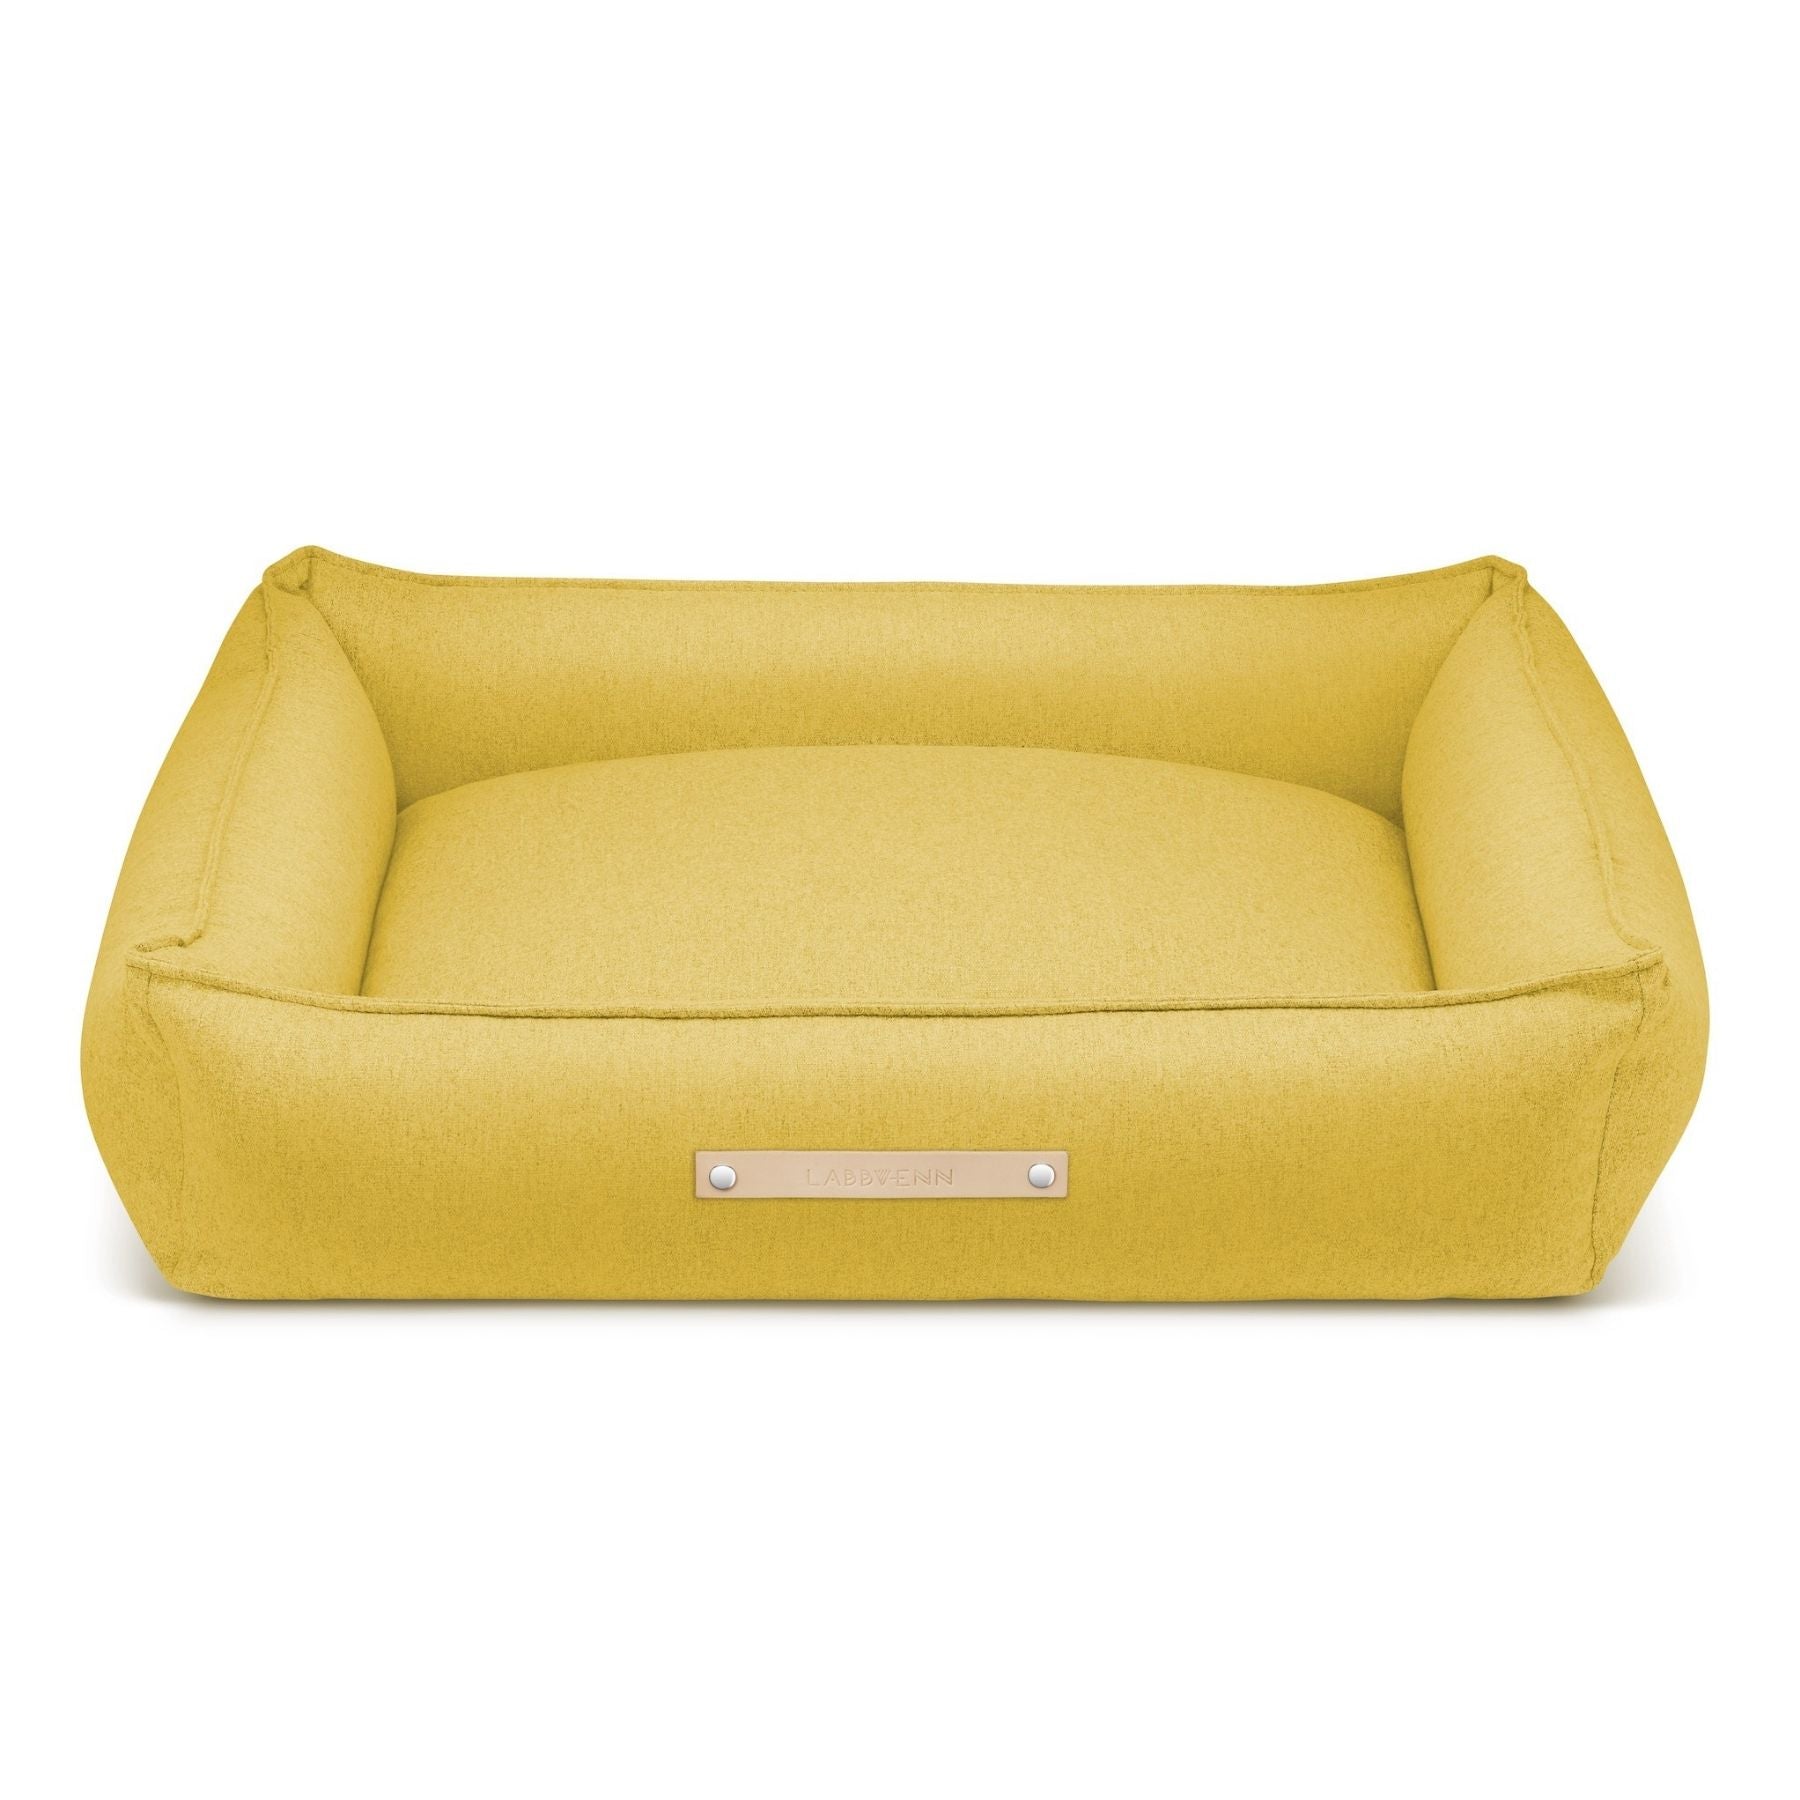 Dieses Bild zeigt ein Hundebett im nordischen Stil von LABBVENN. Es heißt Møvik und ist in drei Farben und drei Größen erhältlich. Das Bett wird für deinen Hund in sorgfältiger Handarbeit hergestellt, ist nachhaltig und sehr luxoriös. Dies ist die Farbe Honey-Gelb.